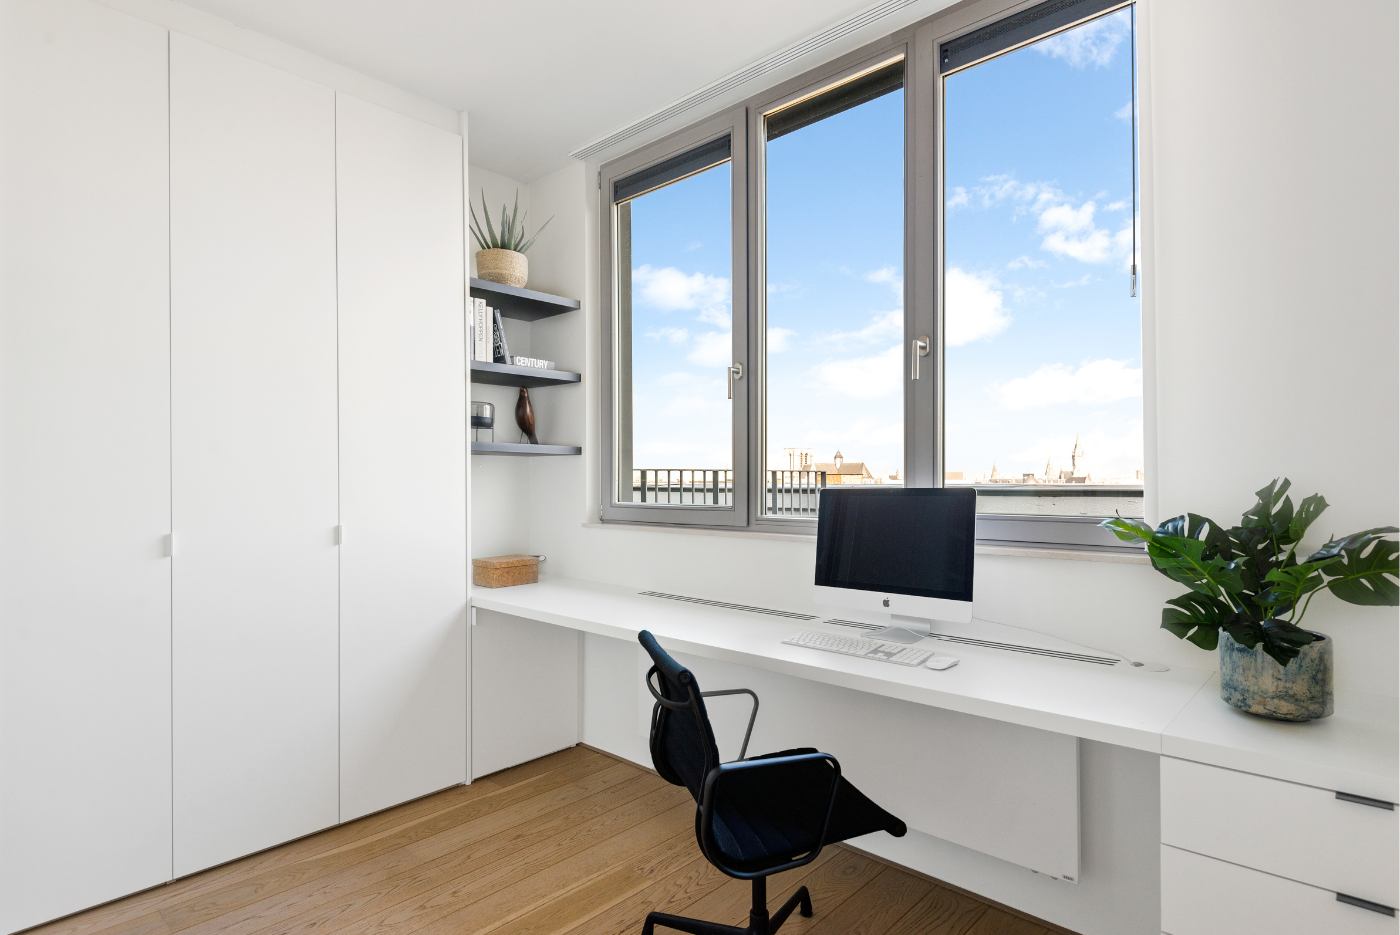 Home office voorzien van maatkasten en bureau